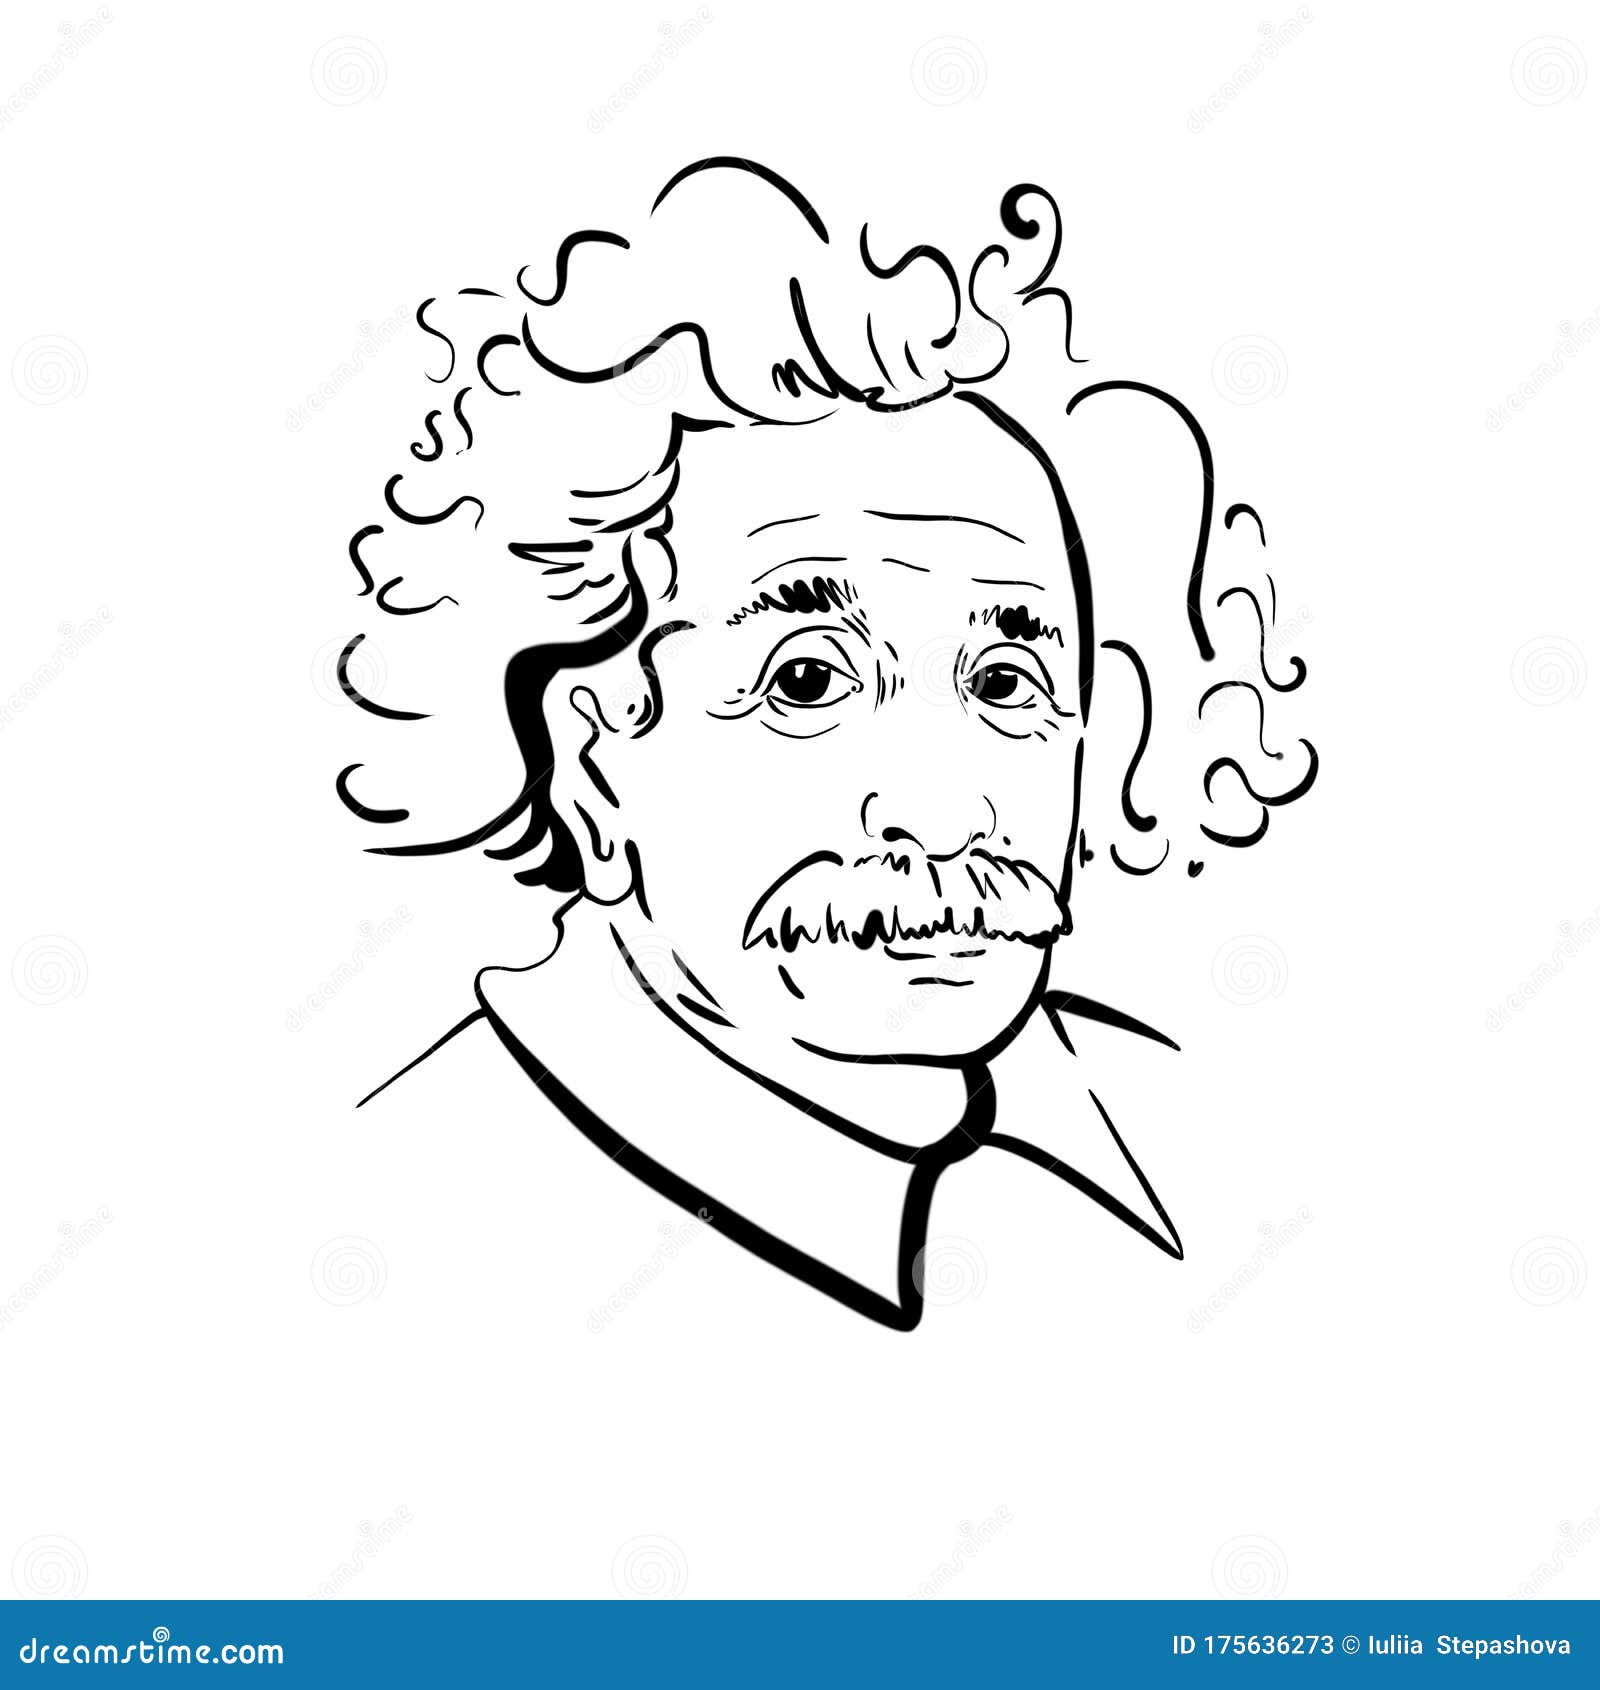 Albert Einstein Drawing by Rajasekar Alamanda - Fine Art America